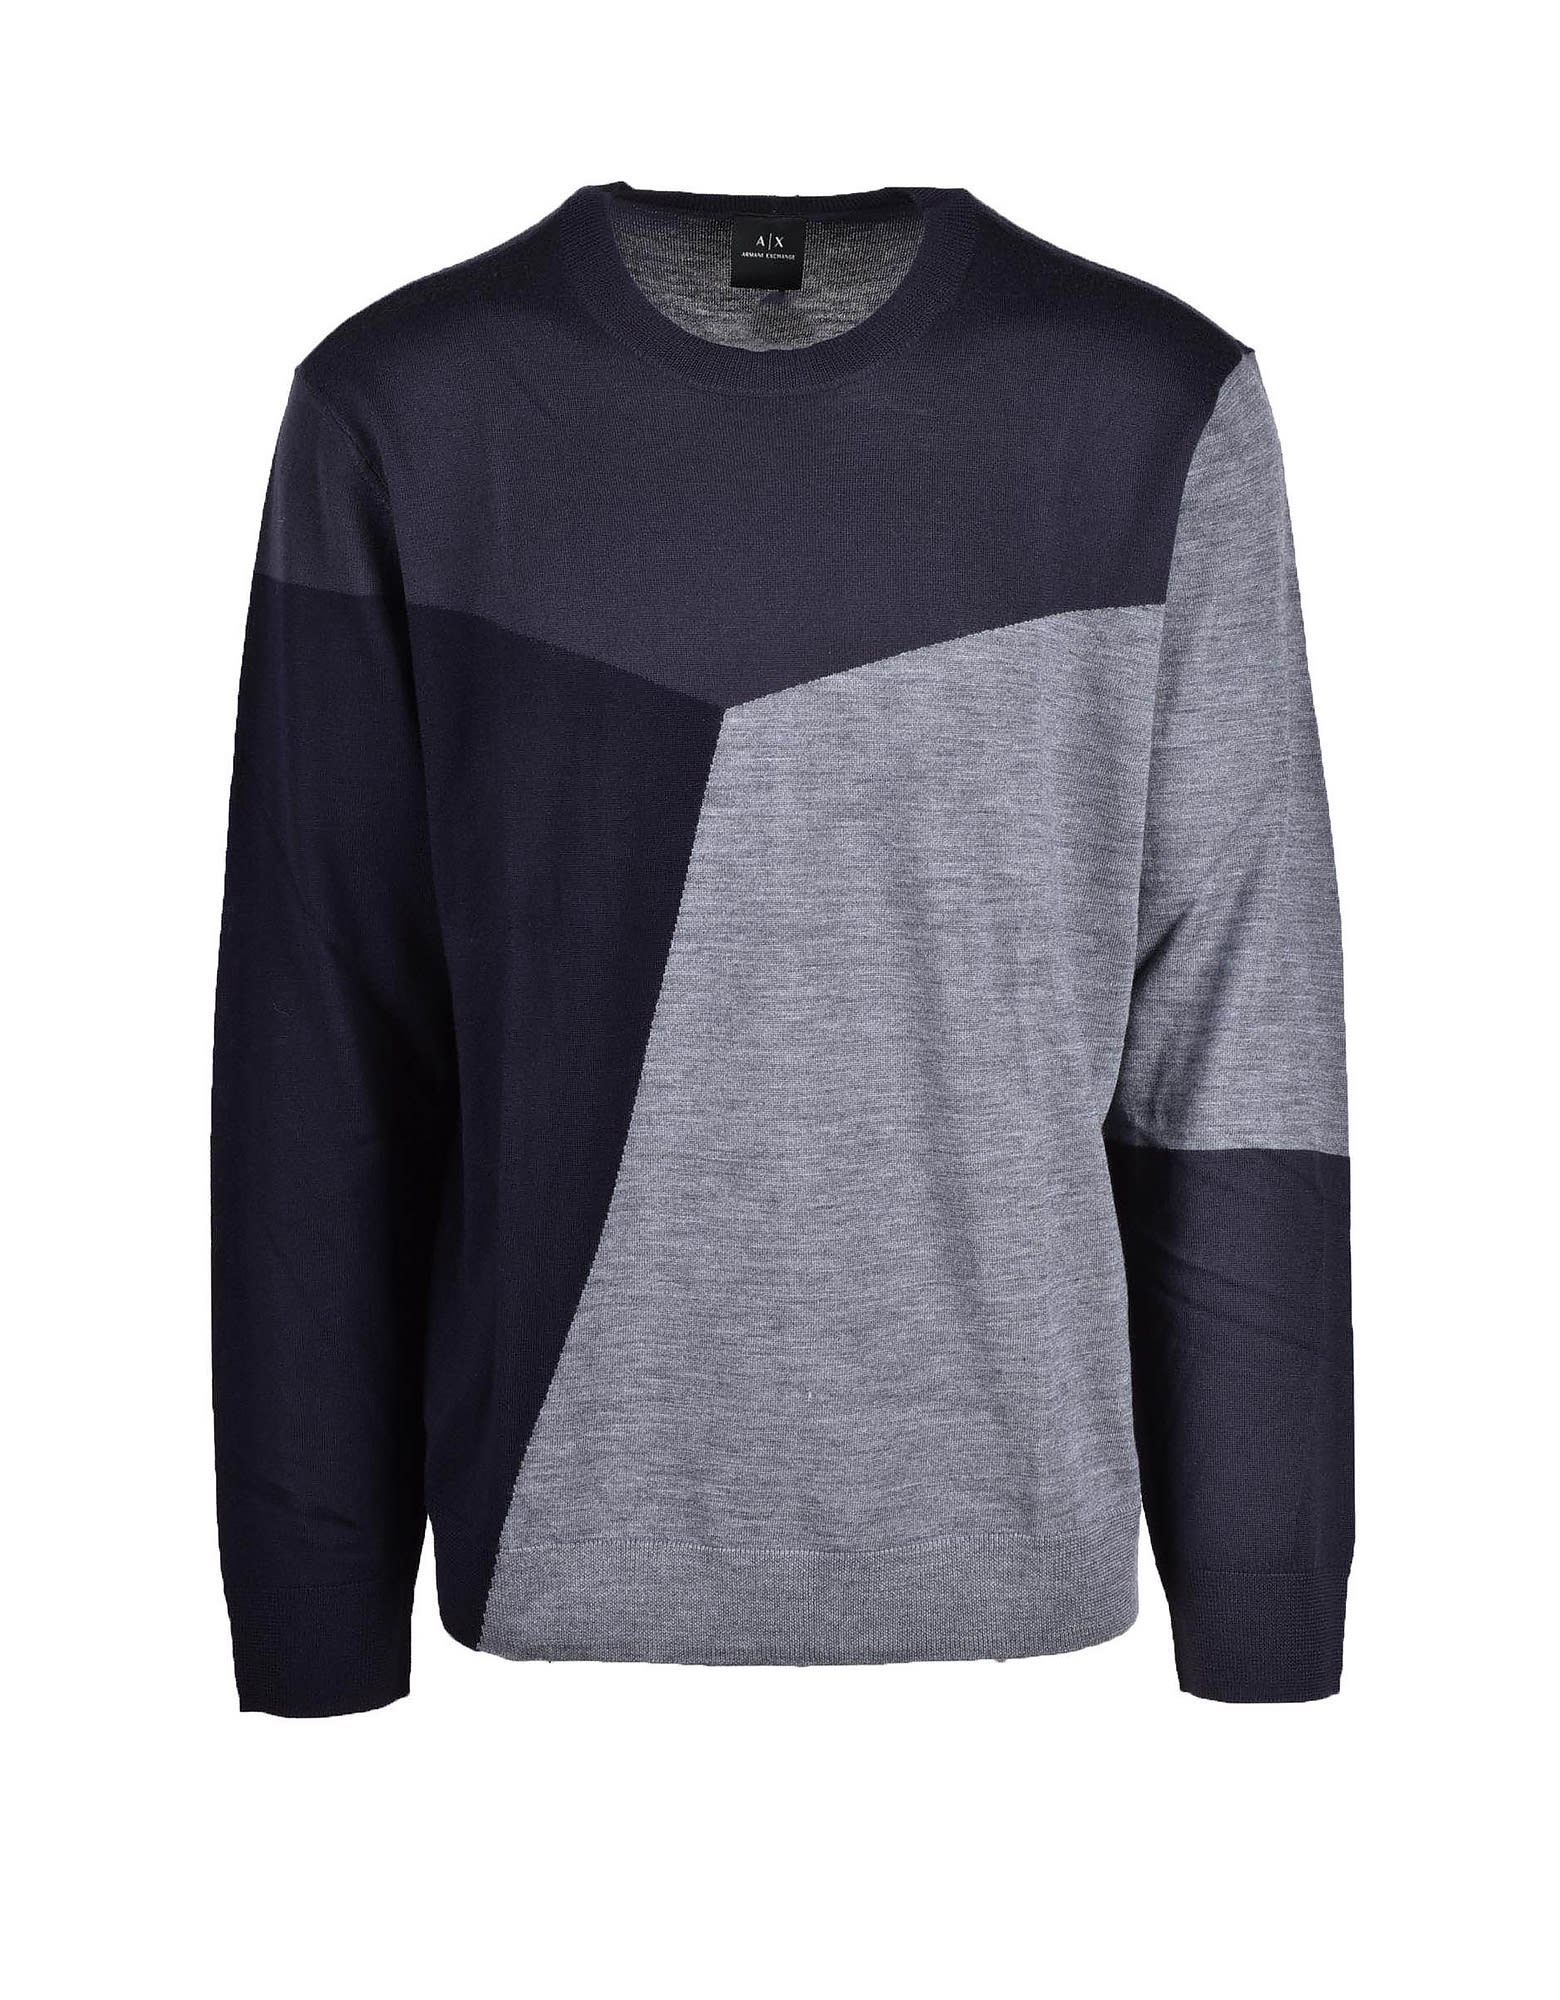 Armani Collezioni Mens Black / Gray Sweater